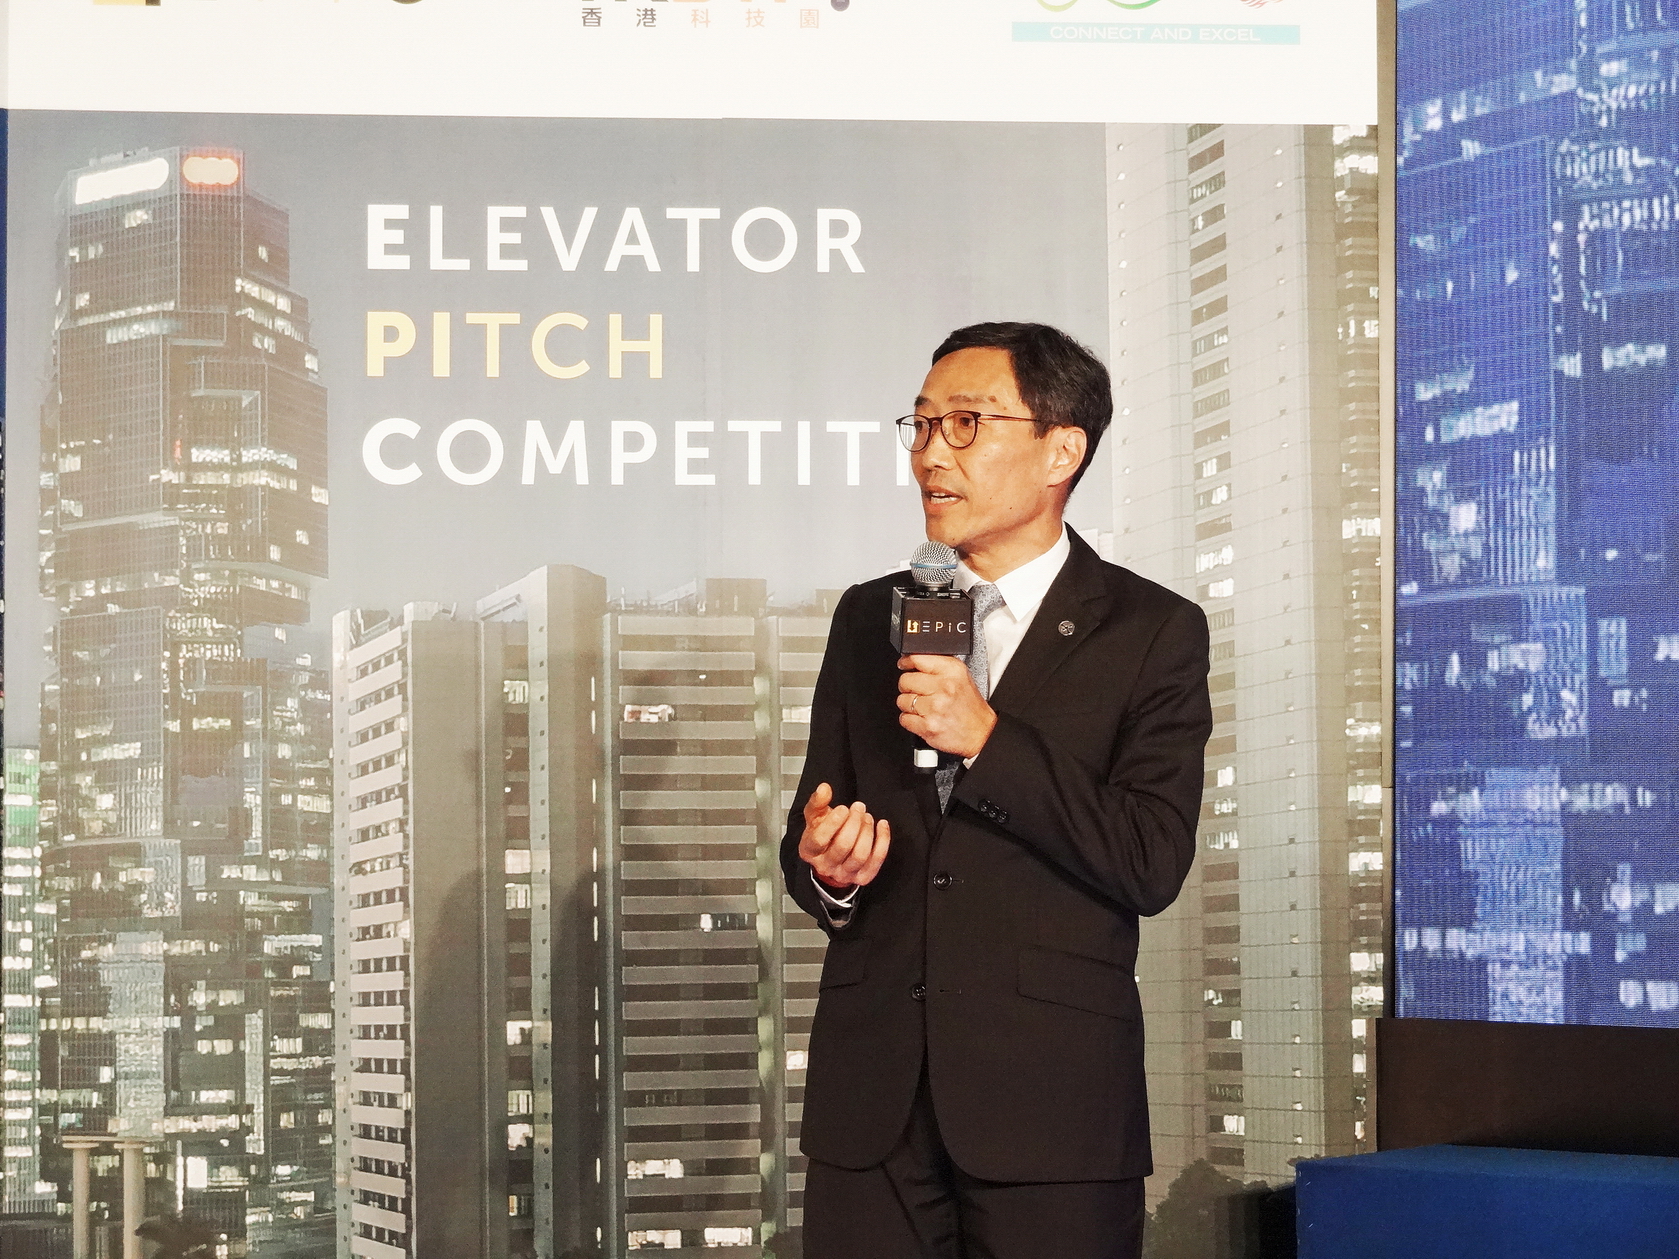 香港科技園公司行政總裁黃克強表示：「今年的參賽申請眾多、參賽者的背景非常多元，加上他們在整個賽事中展現的熱情，皆令人驚喜不已。」